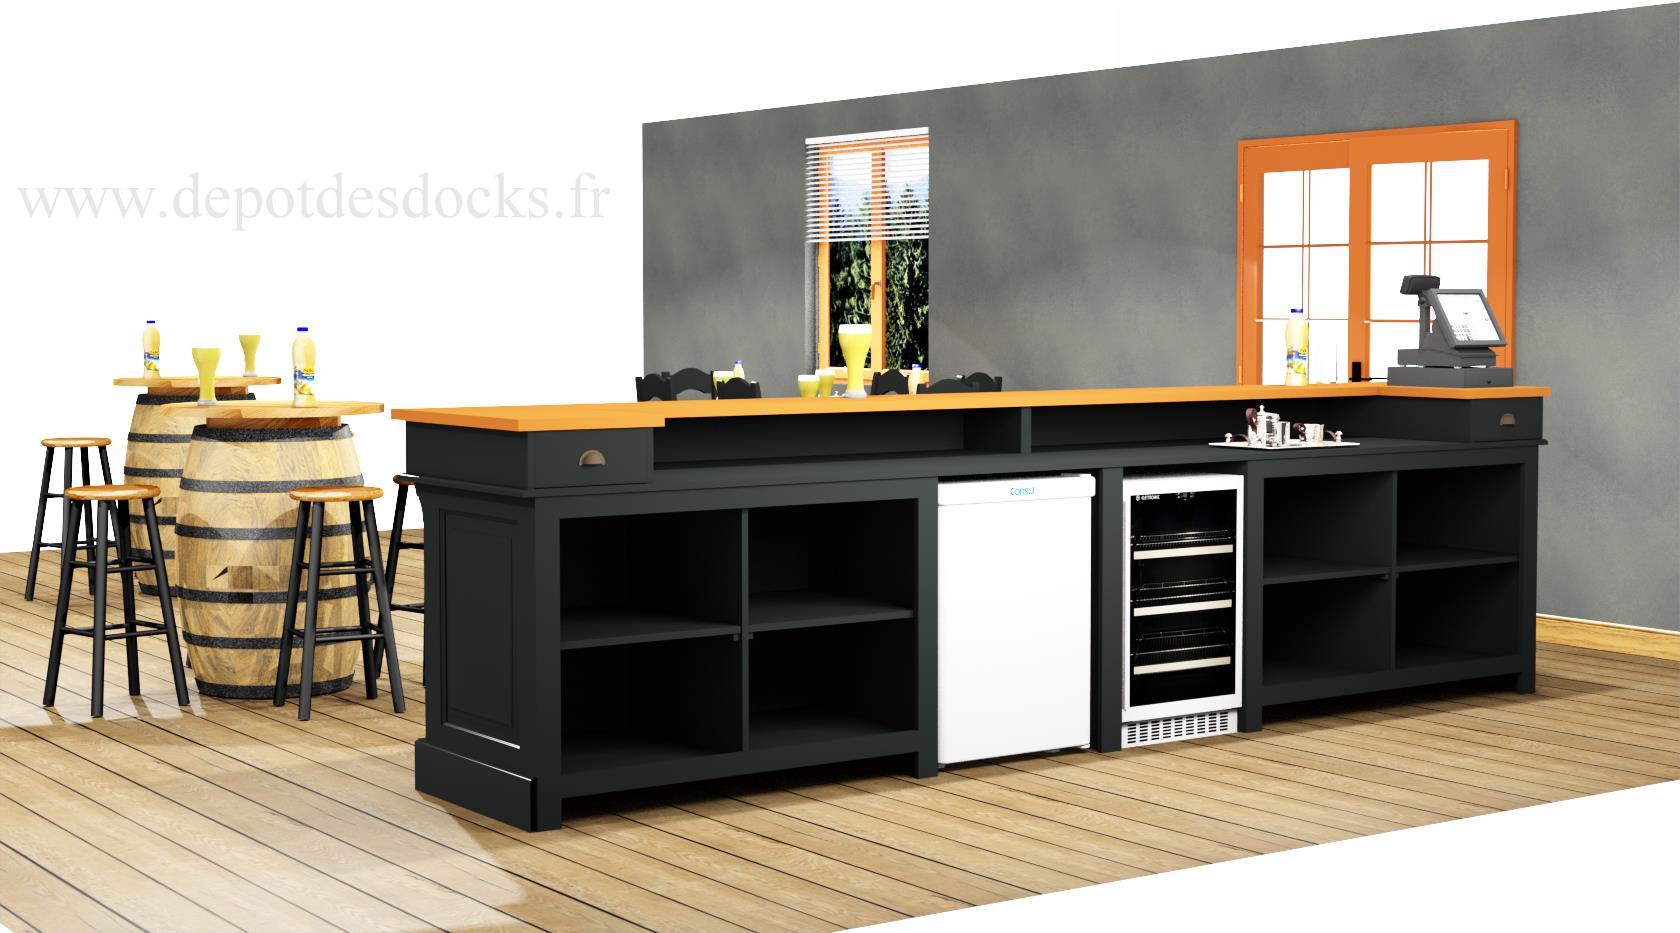 Comptoir bar en pin massif plateau acier Zingué - 240x65x107